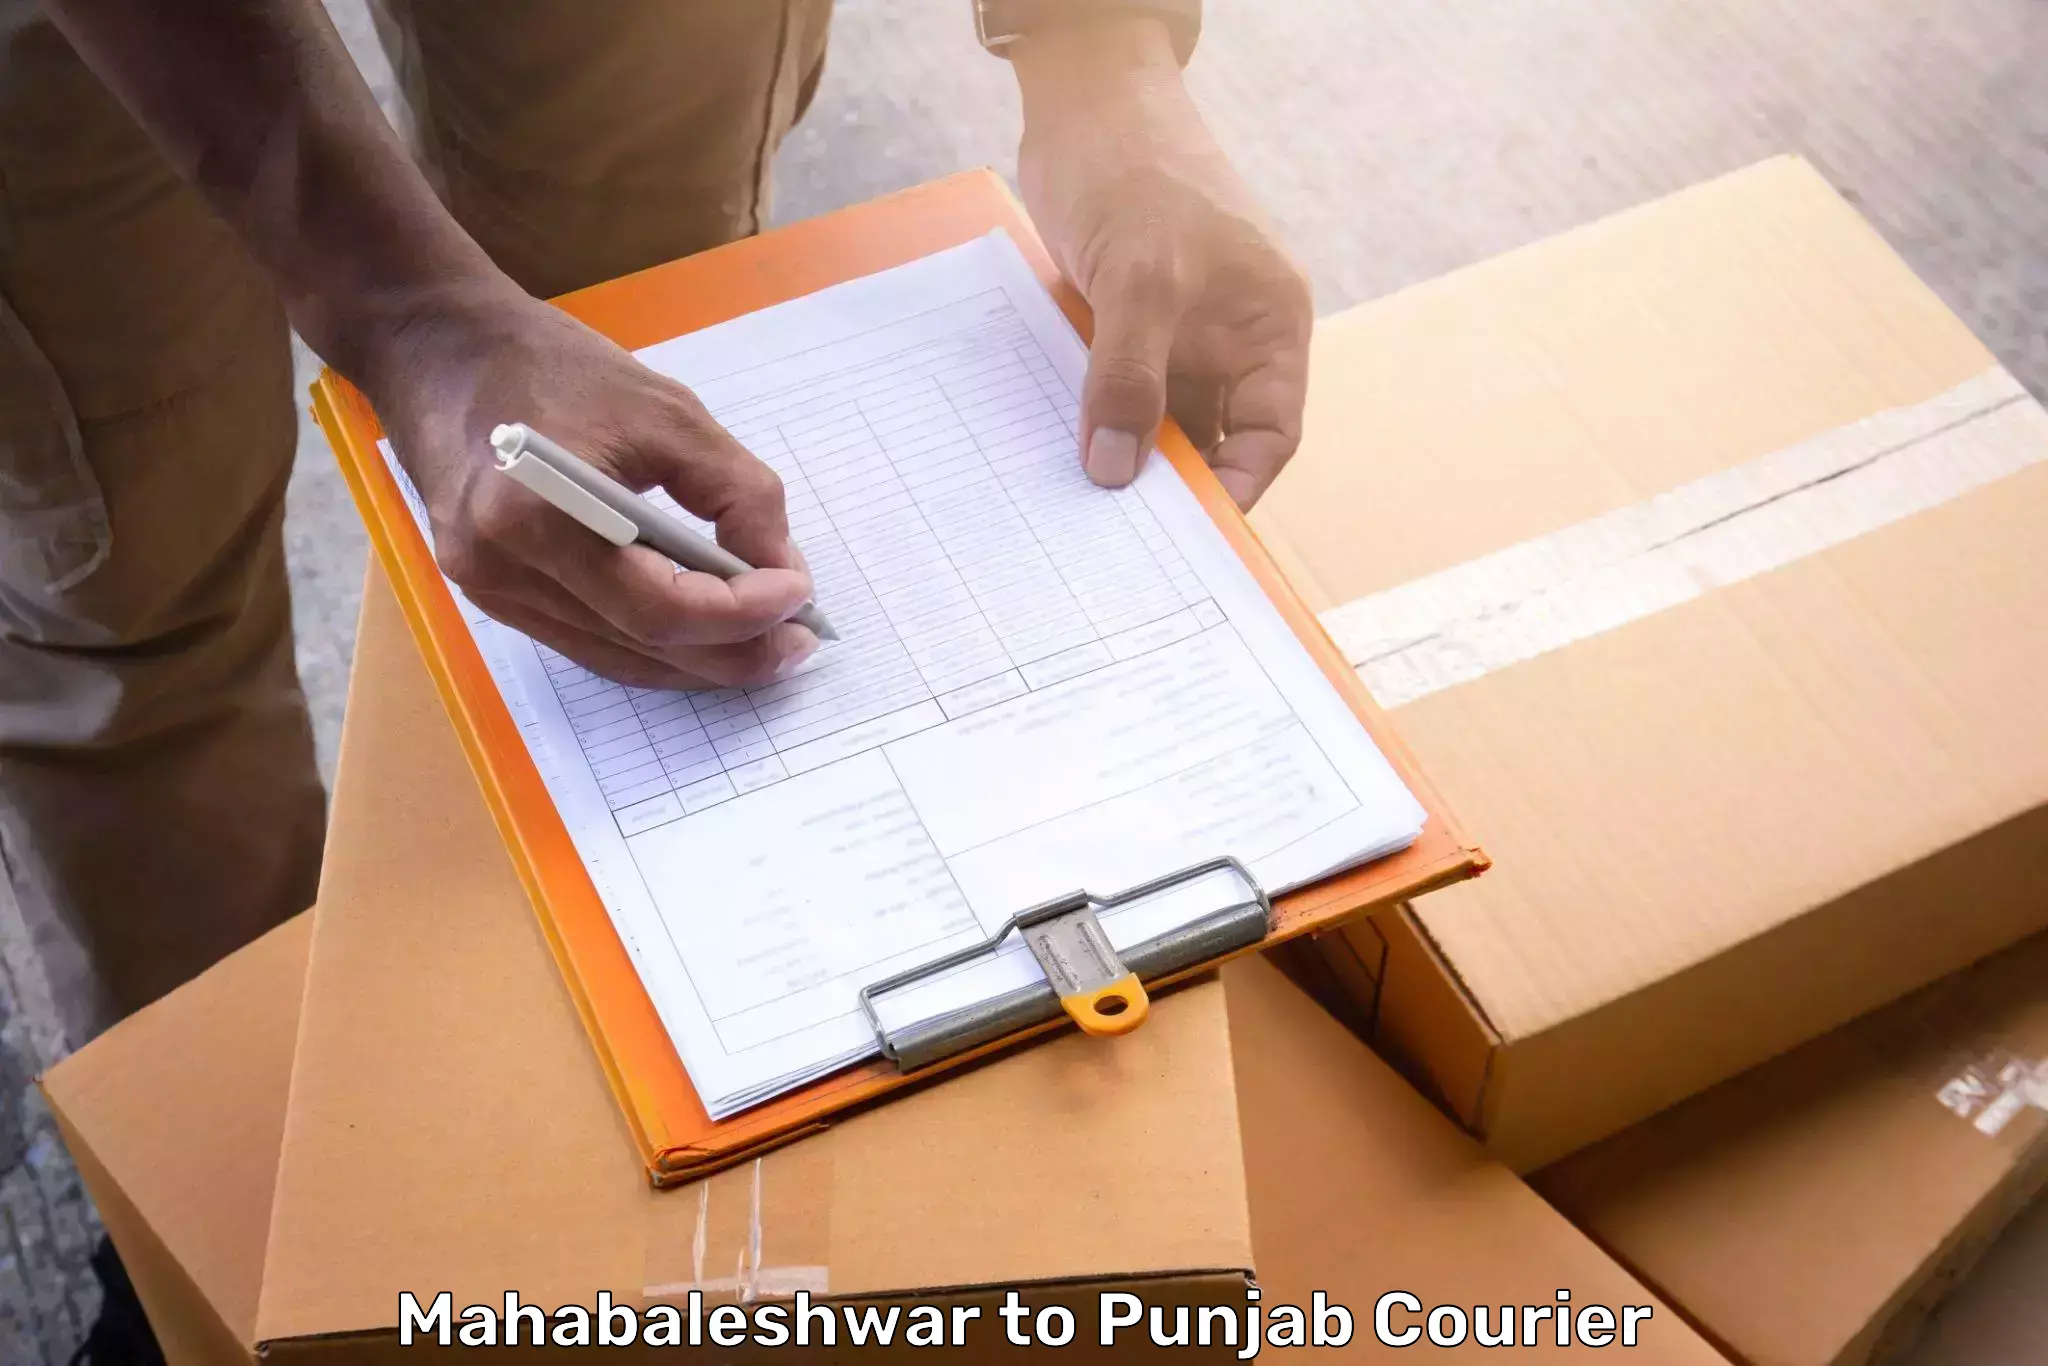 Luggage delivery app Mahabaleshwar to Batala